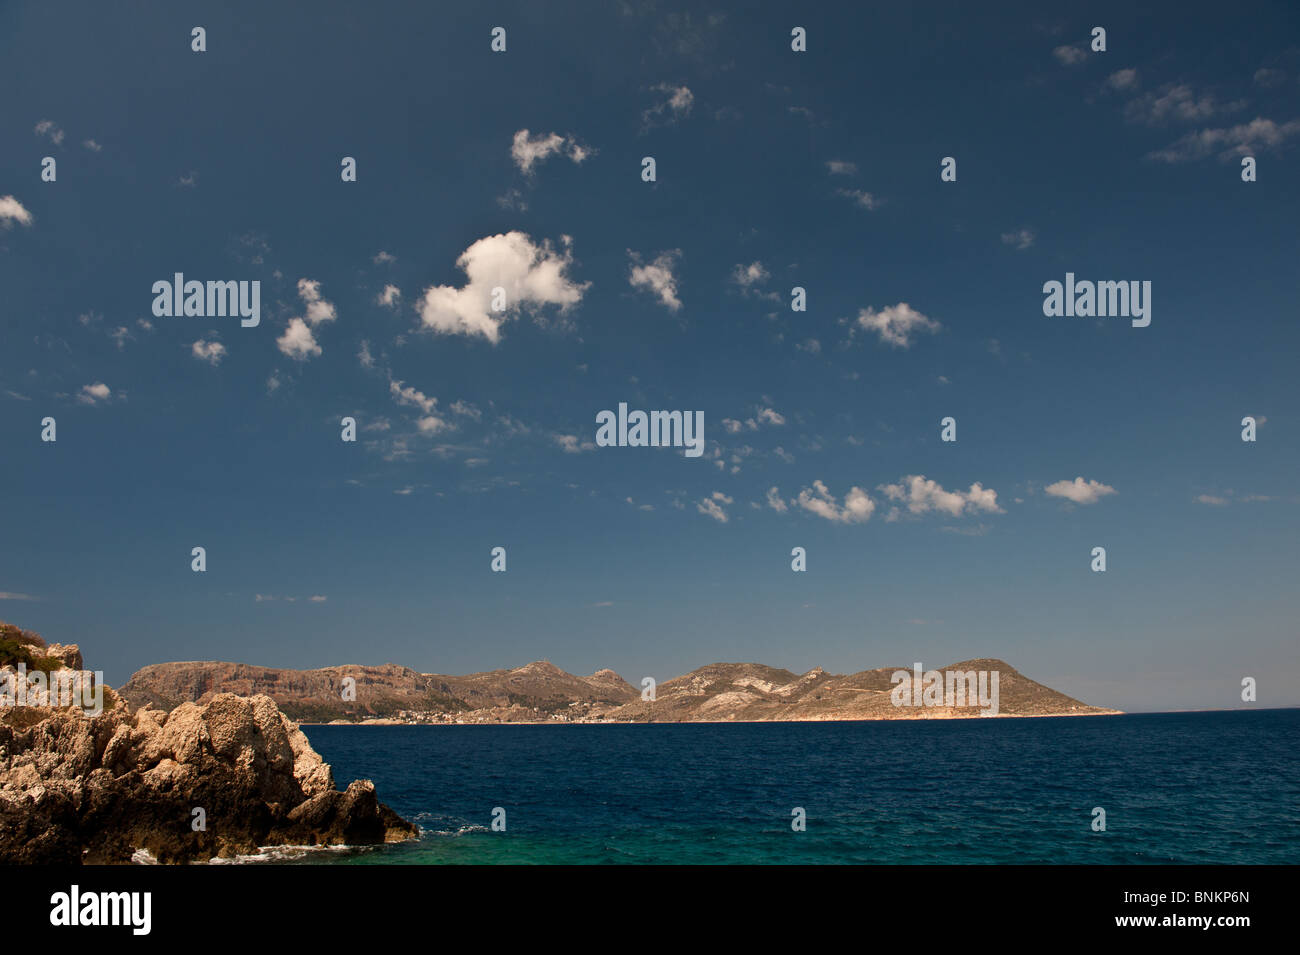 Griechische Insel der Meis (Kastellorizo) von der türkischen Küste in Kas betrachtet Stockfoto